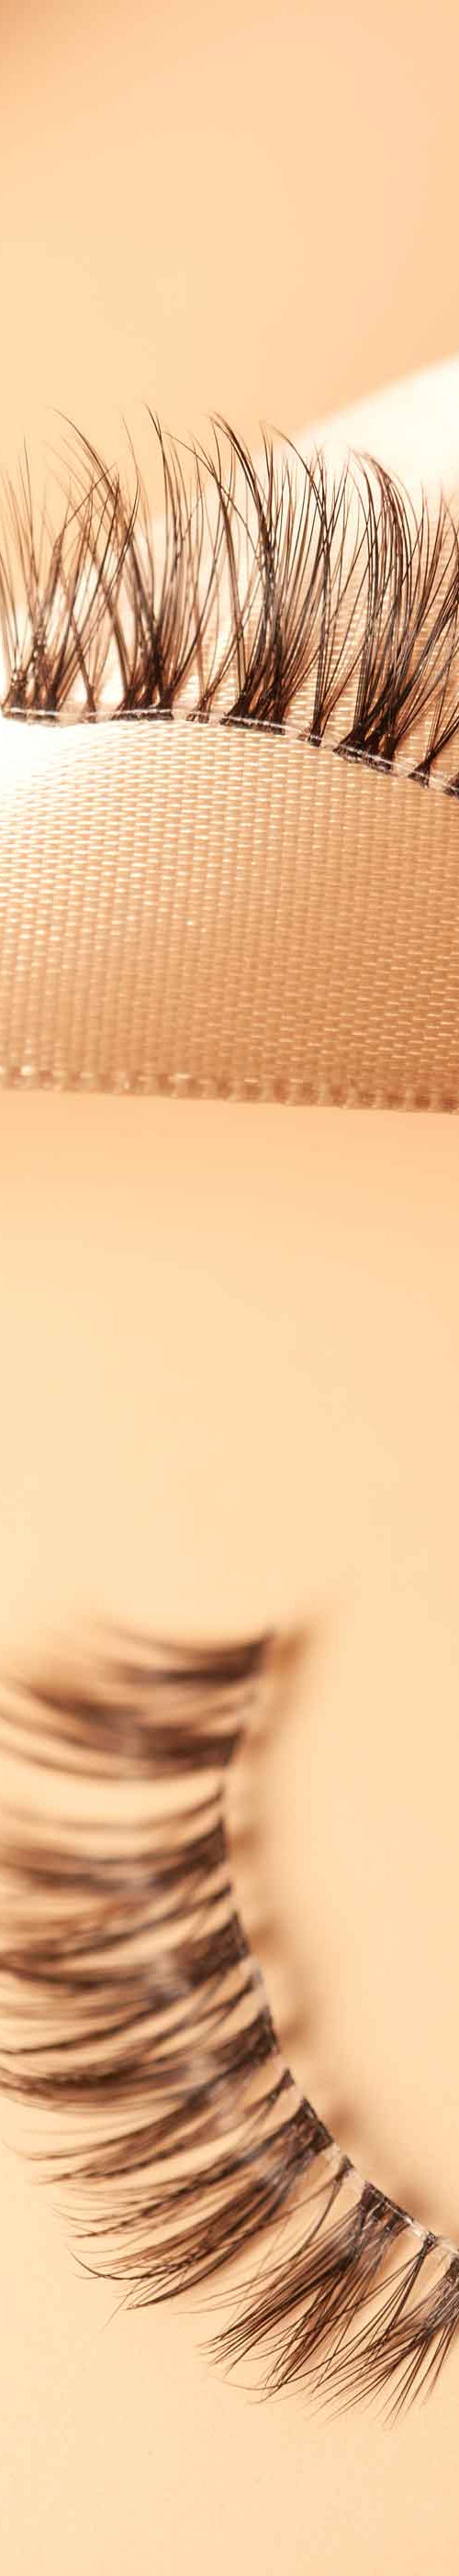 OKT Lashes. Best false eyelashes. Doll eyelashes. Best fake eyelashes. Edmonton False Eyelashes.  Fake eyelashes. How to clean false eyelashes. How to apply false eyelashes. Fake eyelash storage. False eyelashes storage. Reusable false eyelashes.